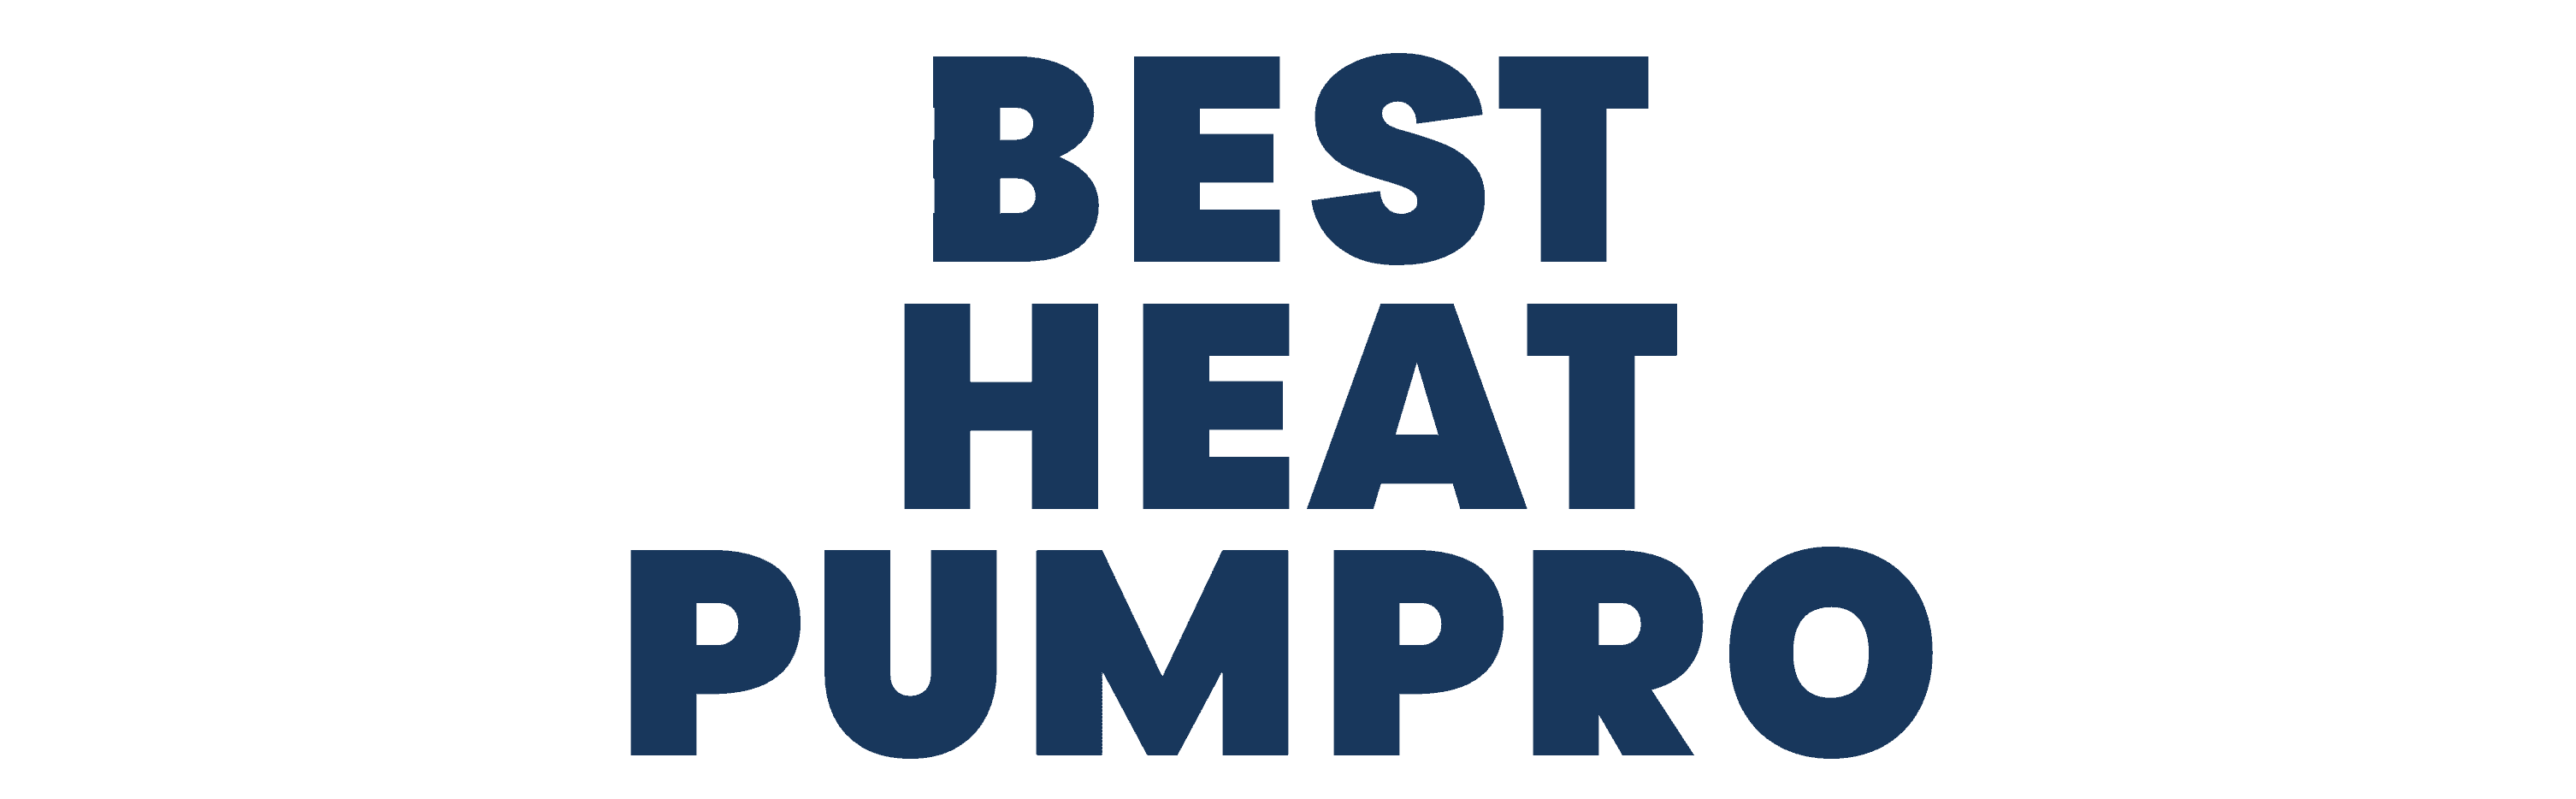 Best Heat Pumpro